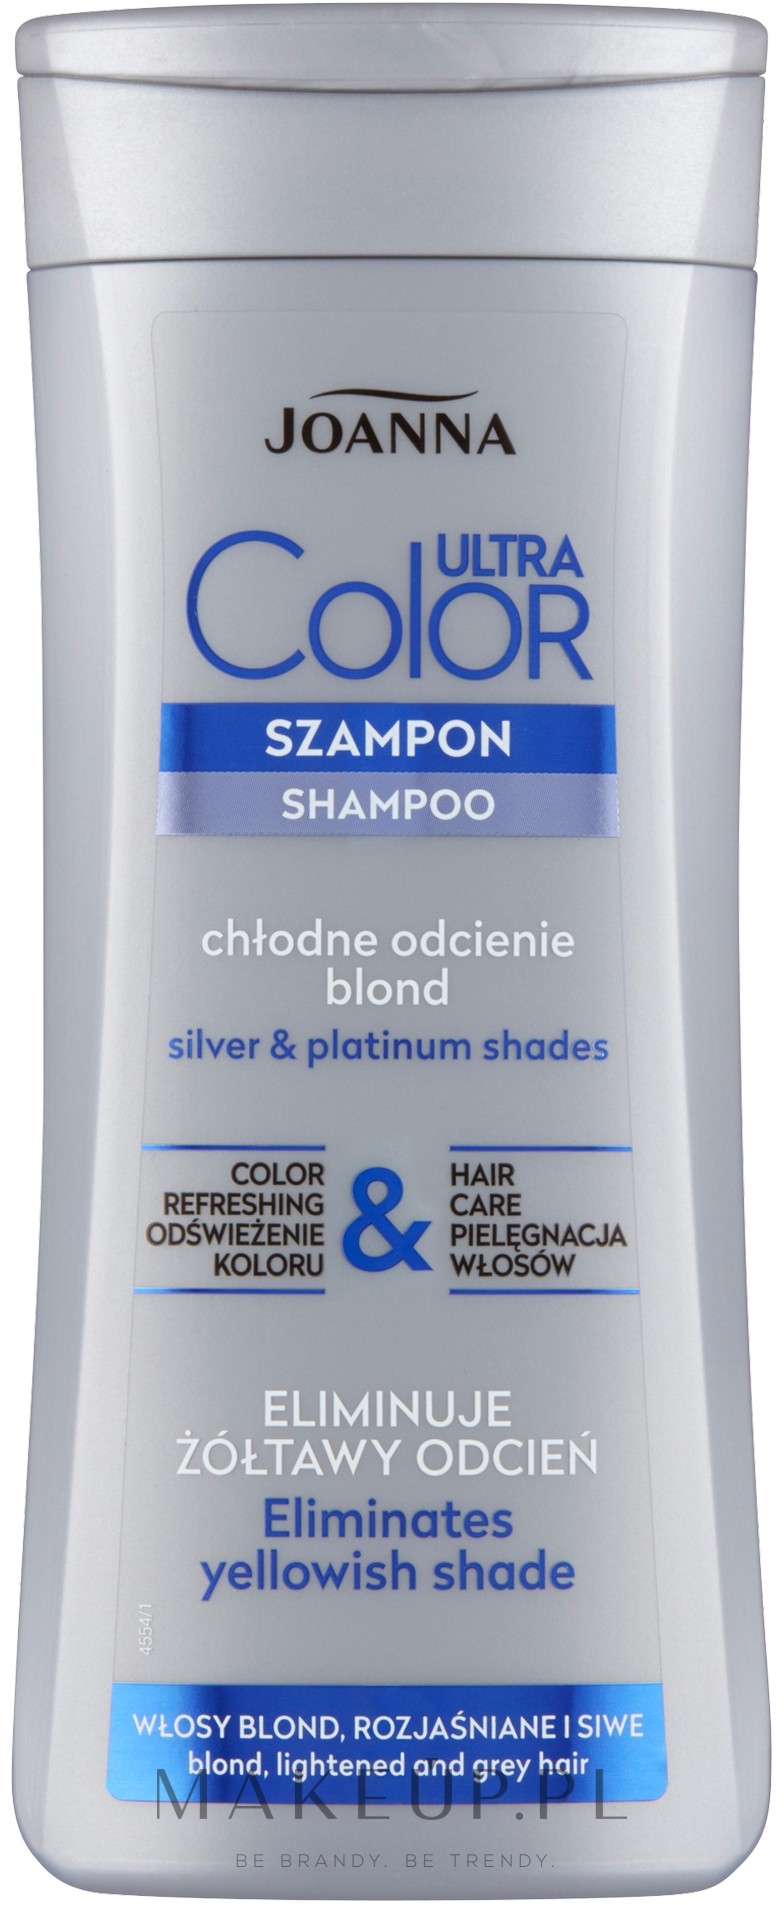 szampon do włosów siwiejących